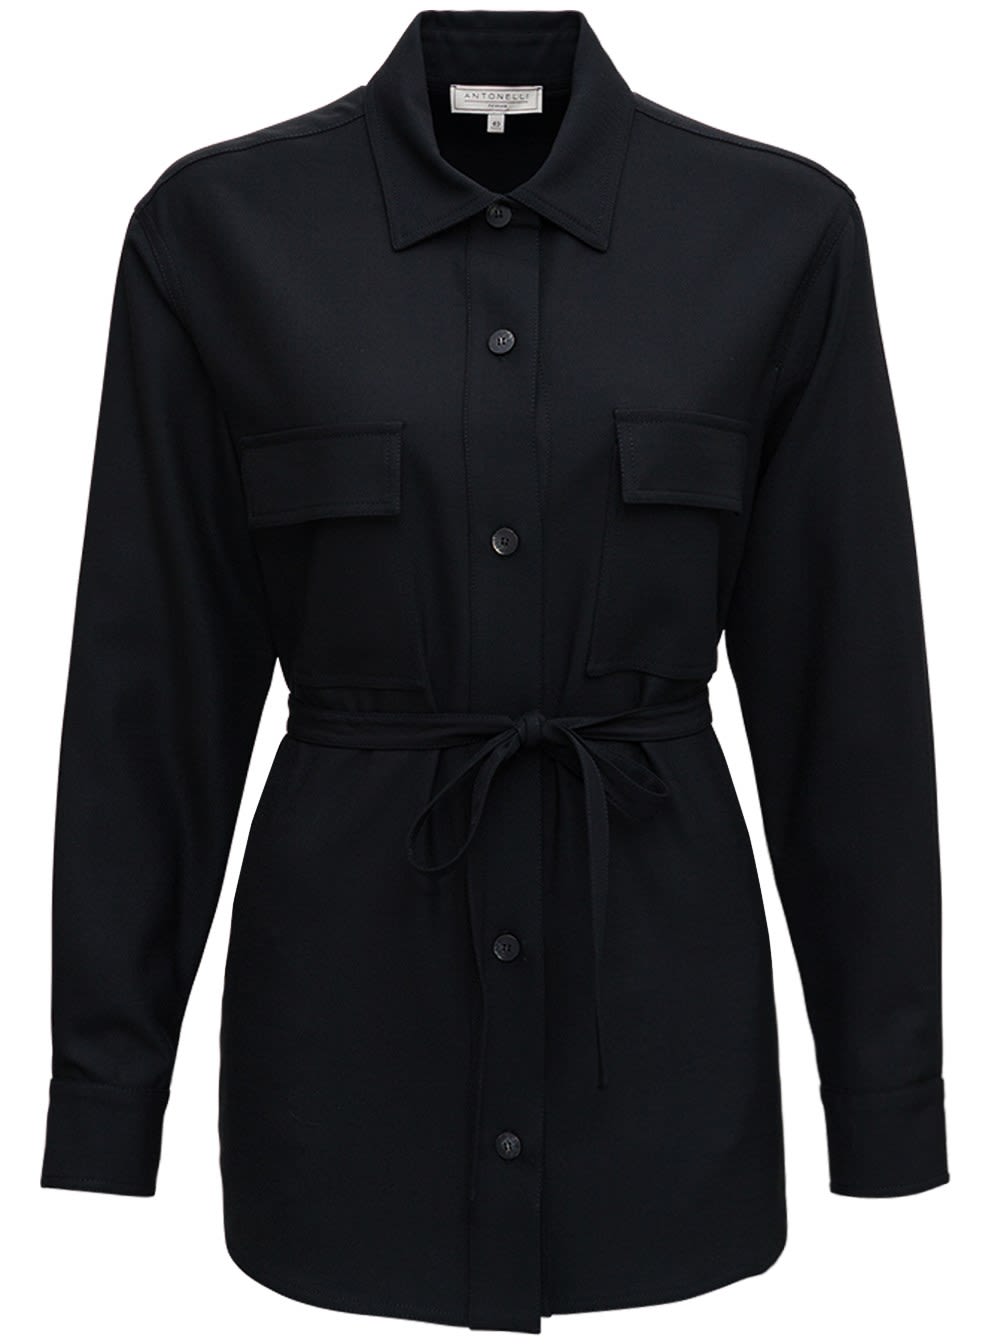 Antonelli Cloe Jacket In Black Wool Blend